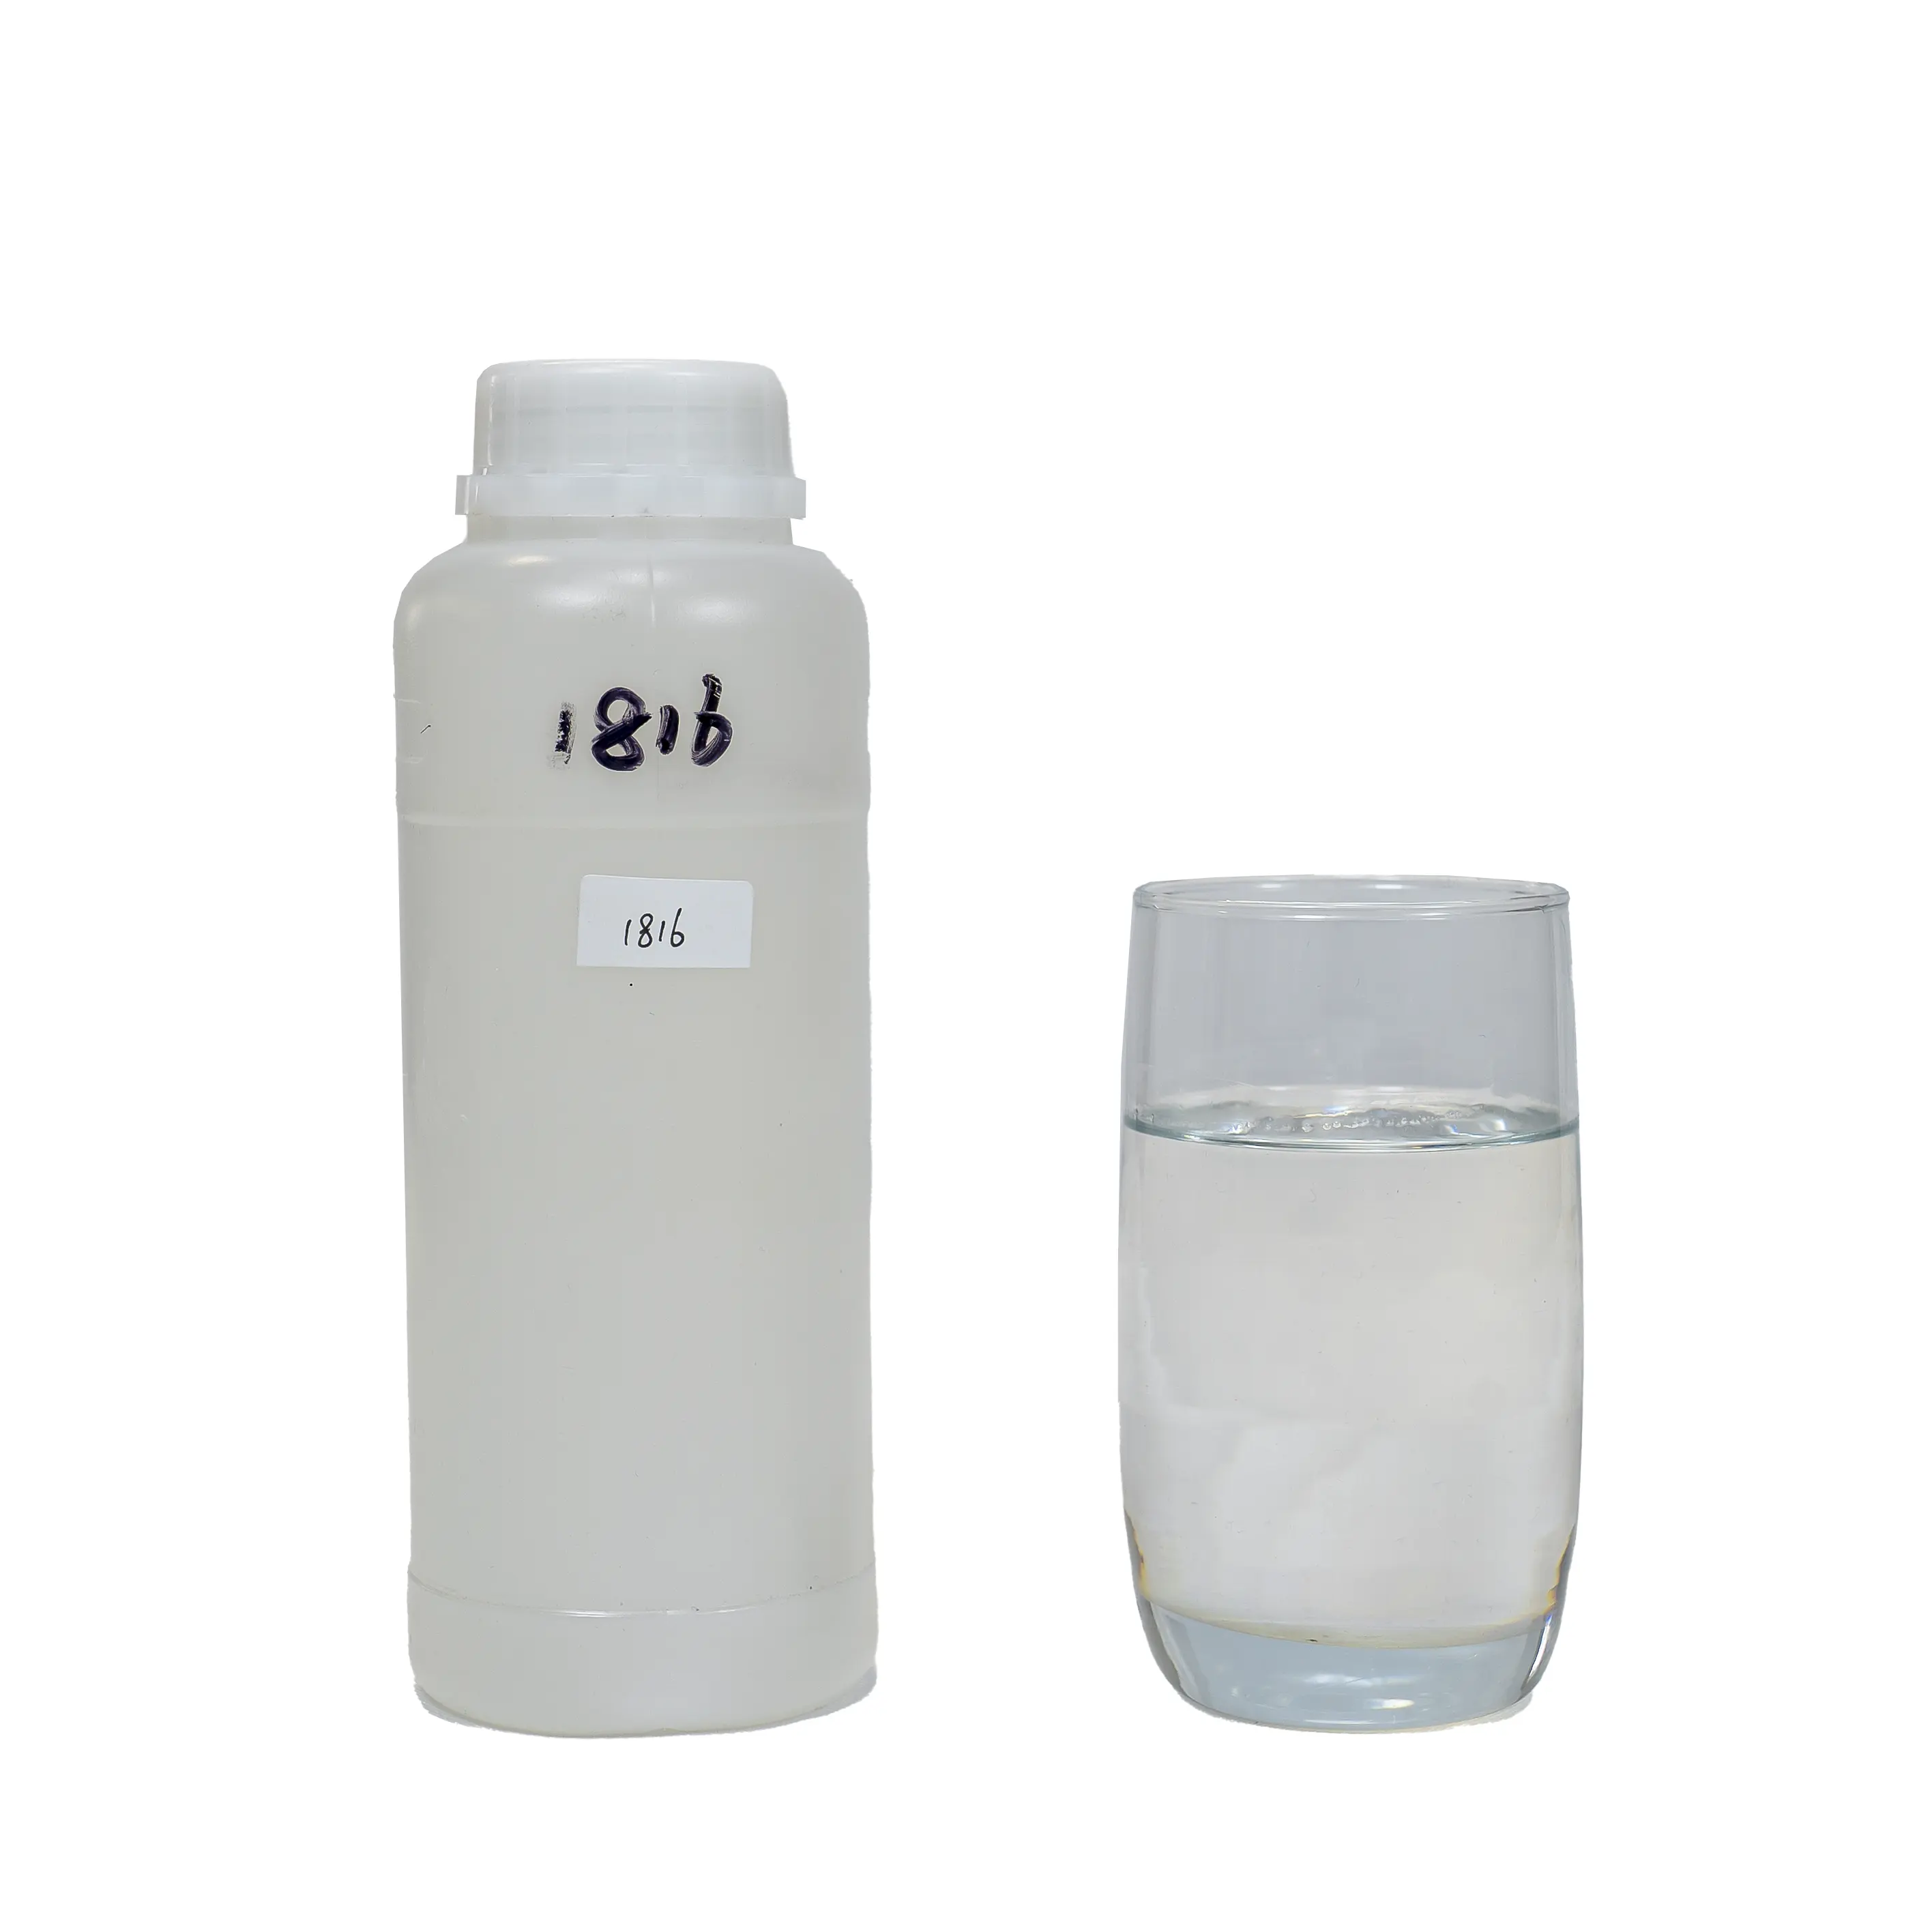 Durcisseur de résine époxy Hanamine 1816 modifié par IPDA avec haute brillance anti-UV pour revêtement de sol époxy 3D